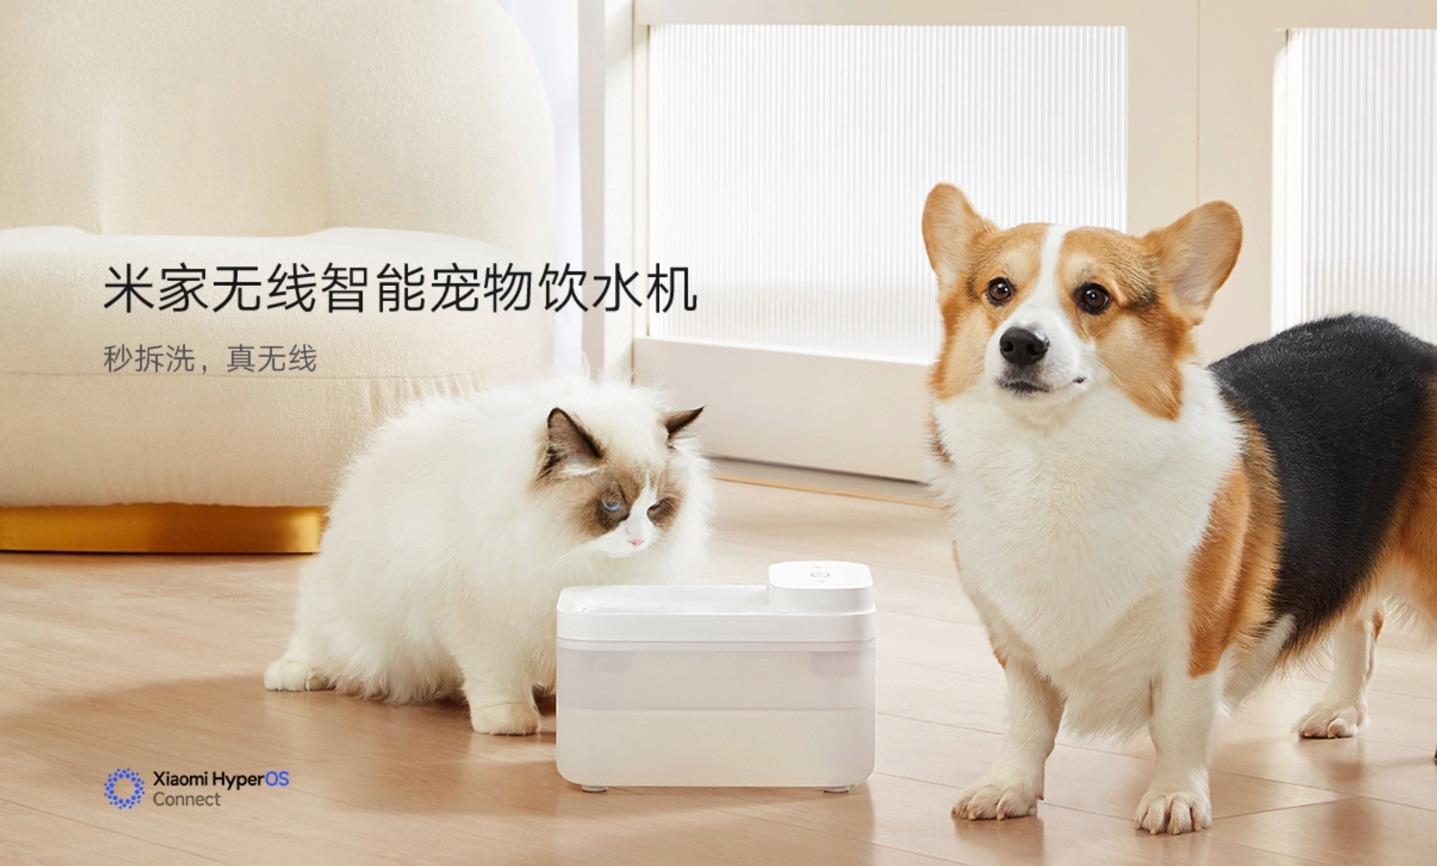 Bezprzewodowy inteligentny dystrybutor wody dla zwierząt Xiaomi Mijia